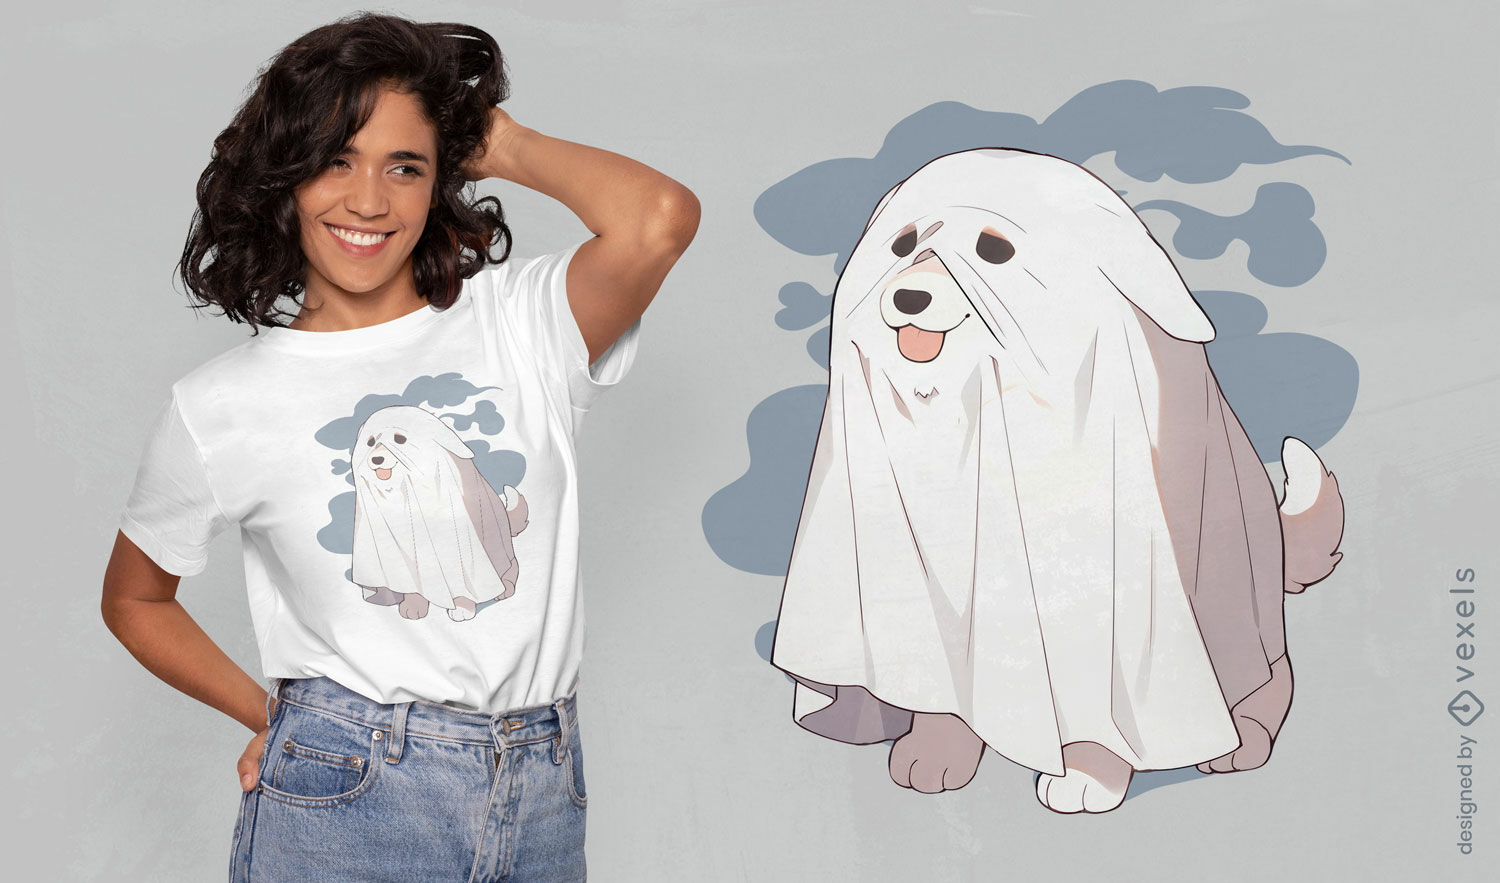 Geisterhund-Kost?m-T-Shirt-Design